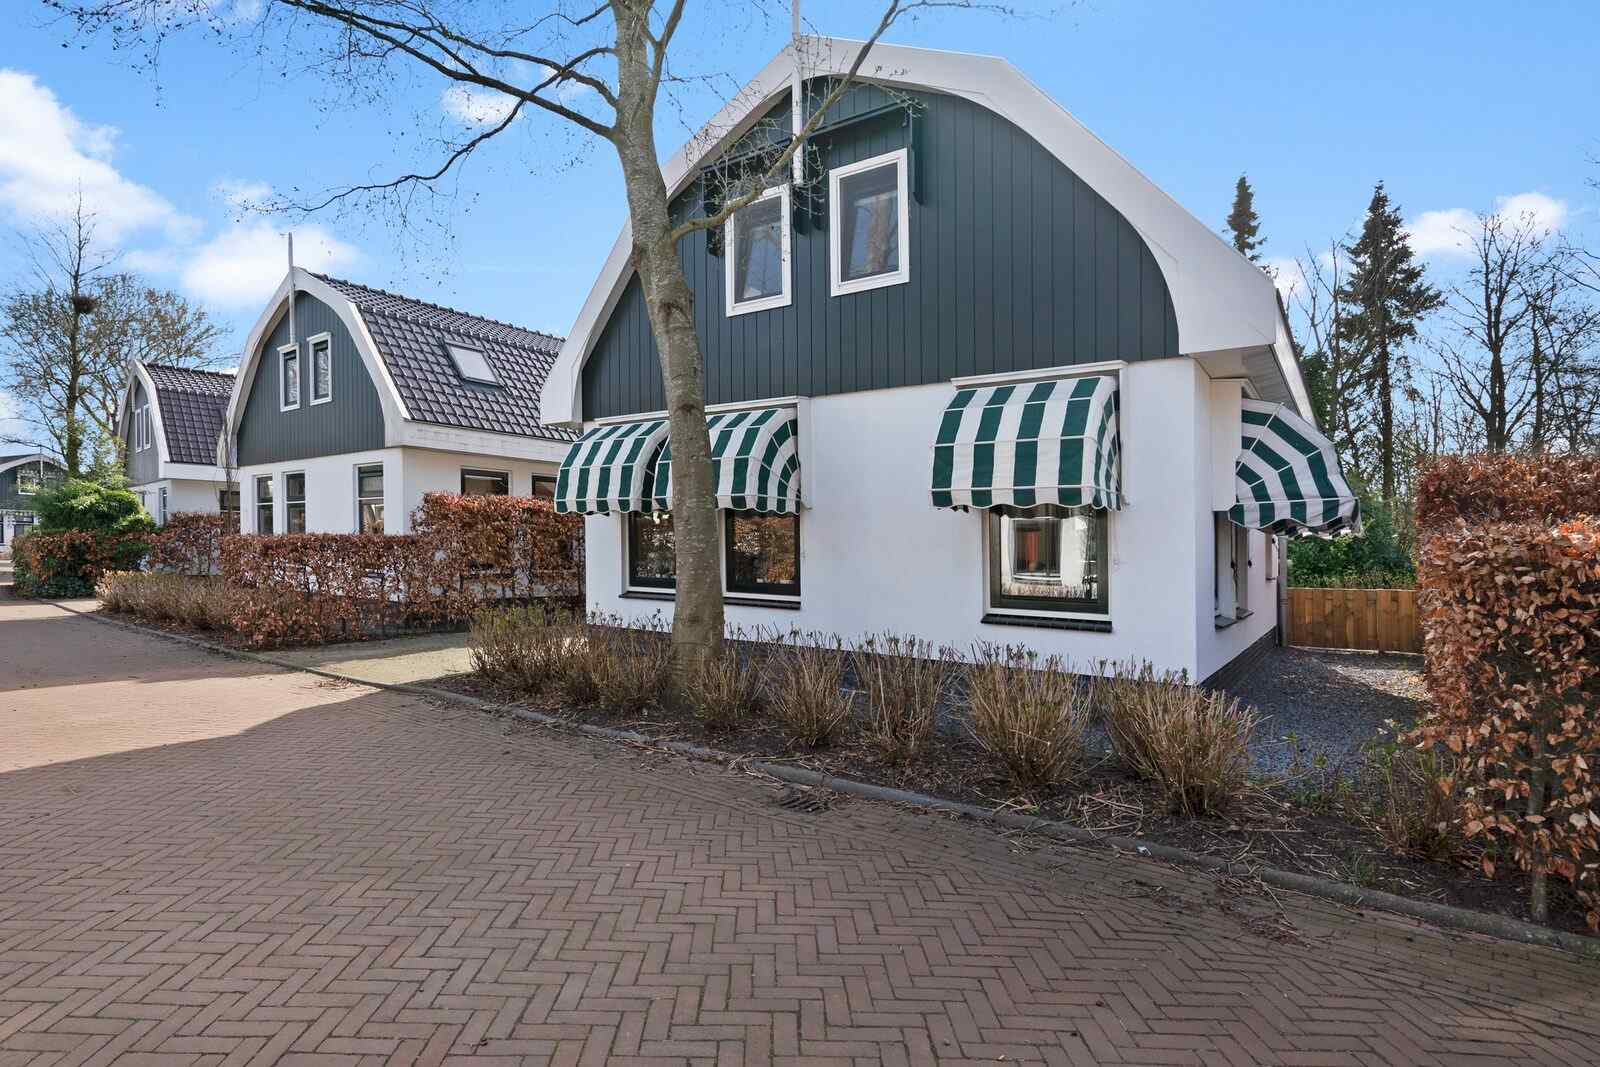 Luxe 6 persoons vakantiehuis in Schoorl, Noord-Holland. - Nederland - Europa - Schoorl